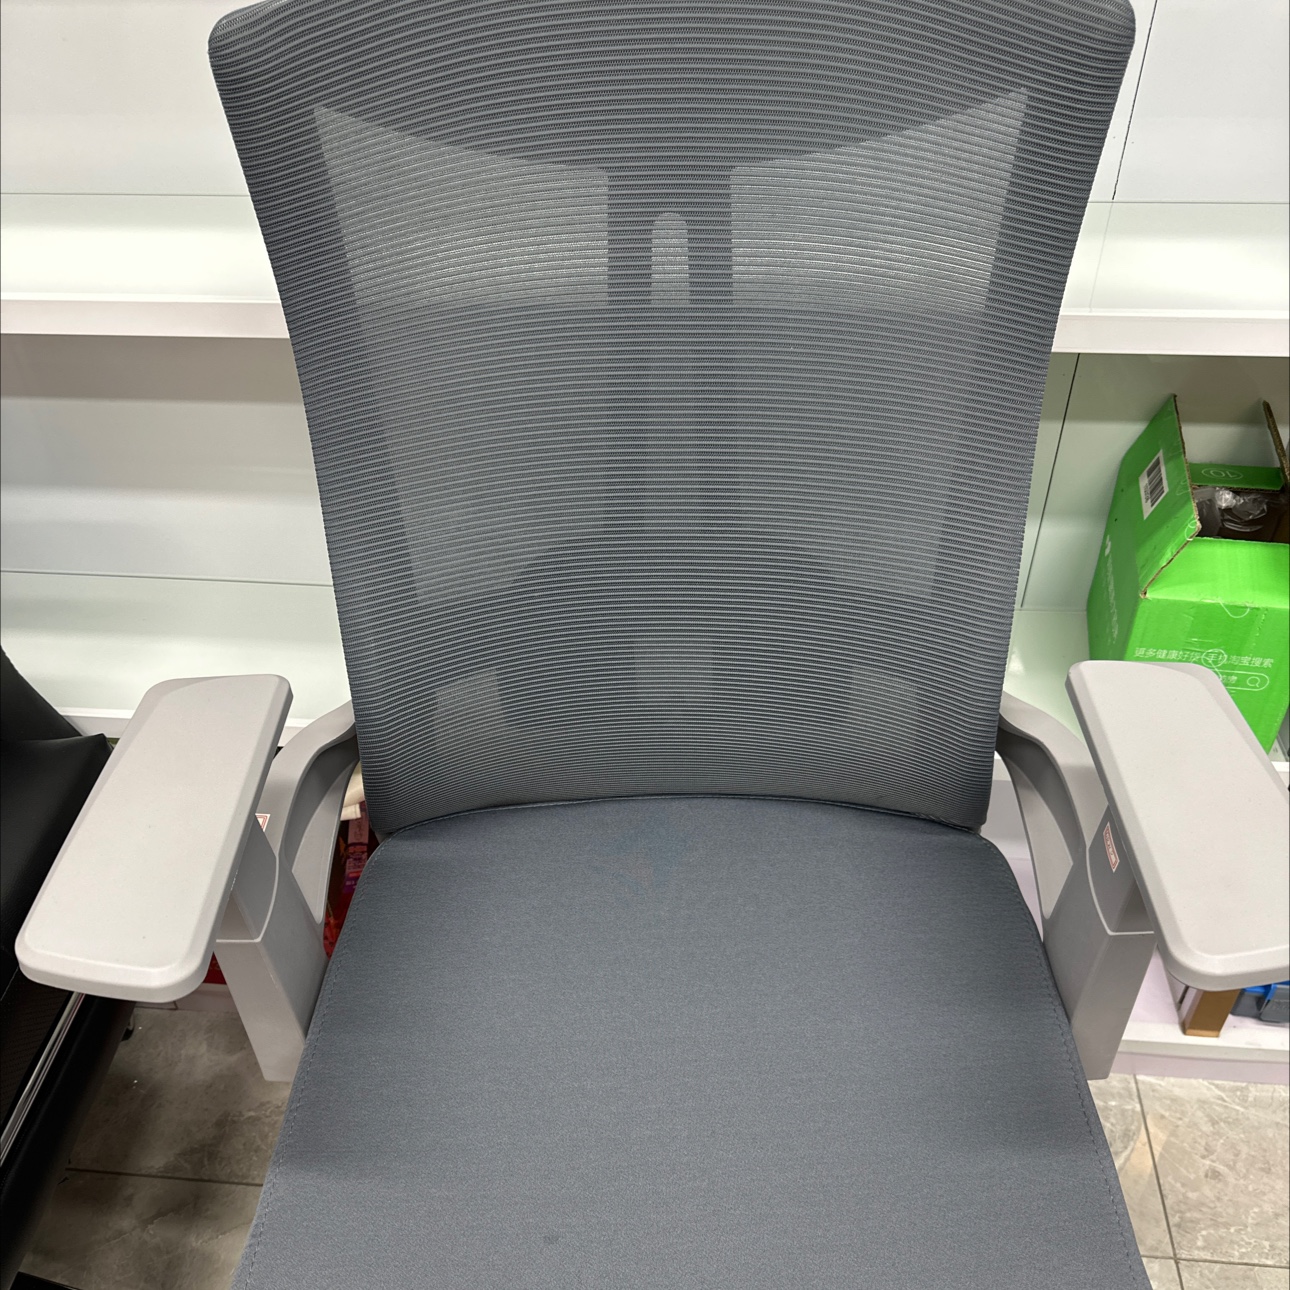 舒适型Office chair-11 办公椅 人体工学设计 高级经理专用椅子 高弹力海绵坐垫 高品质皮质靠背